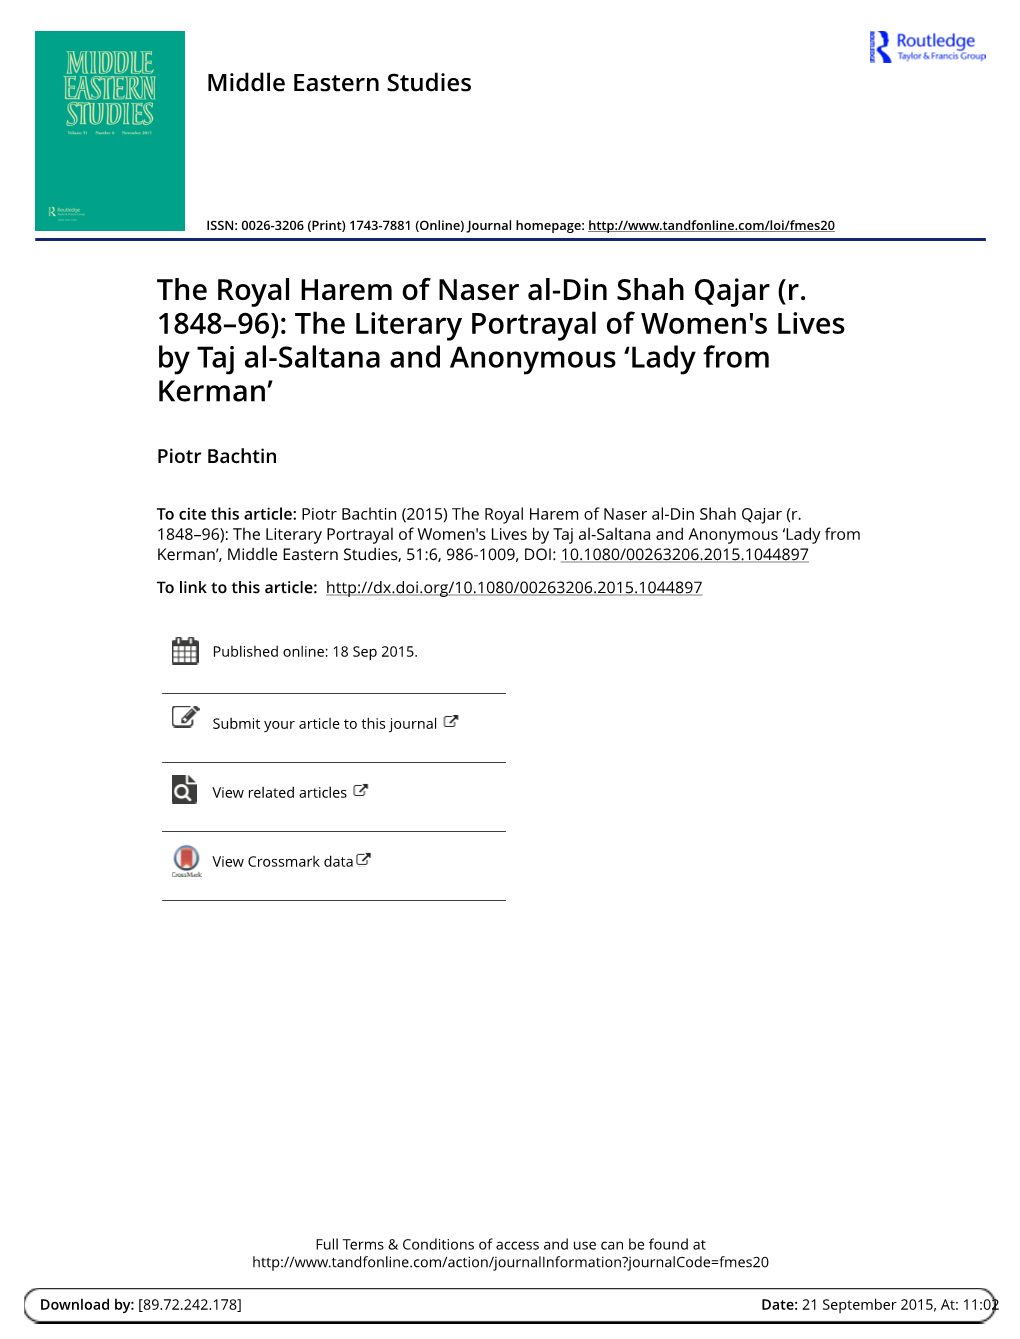 The Royal Harem of Naser Al-Din Shah Qajar \(R. 1848-96\)